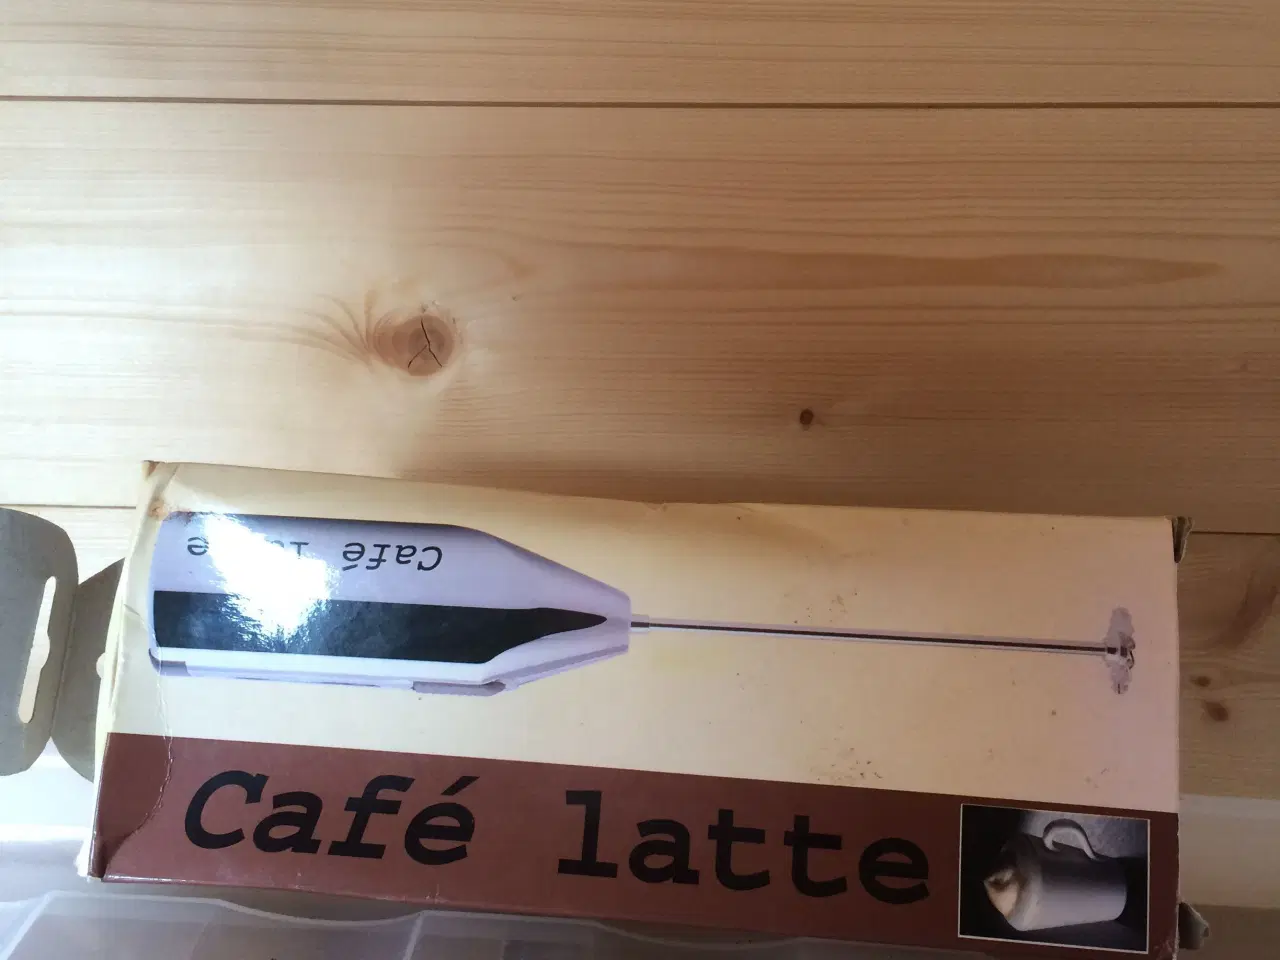 Billede 1 - Cafe Latte pisker